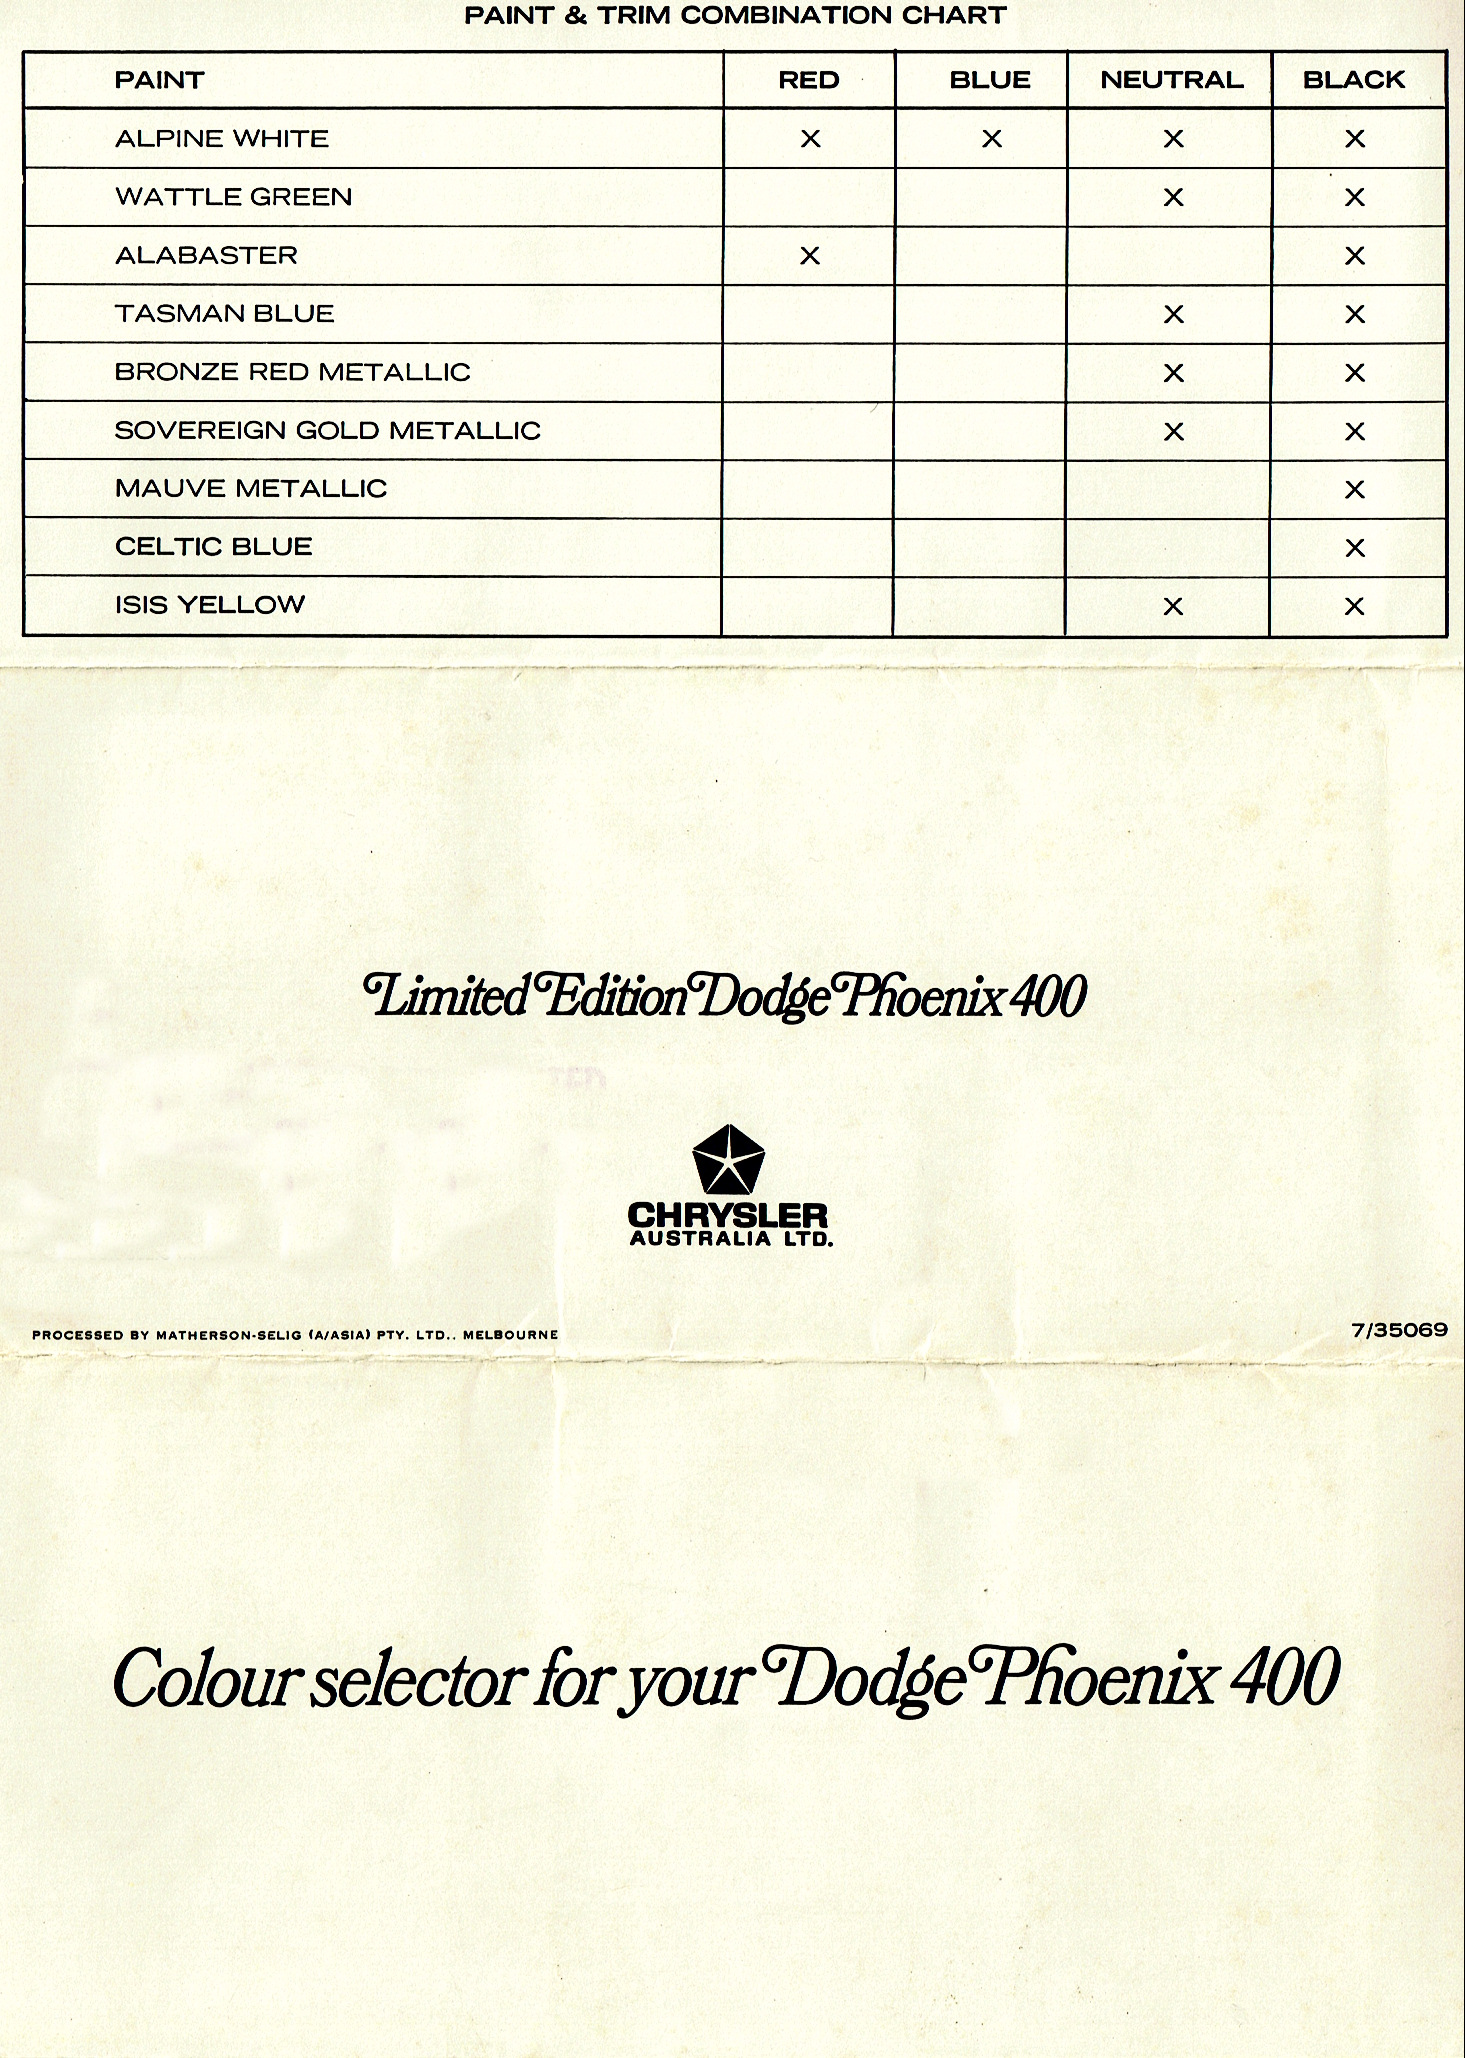 1969 Dodge Phoenix Paint Colours-01-02-03